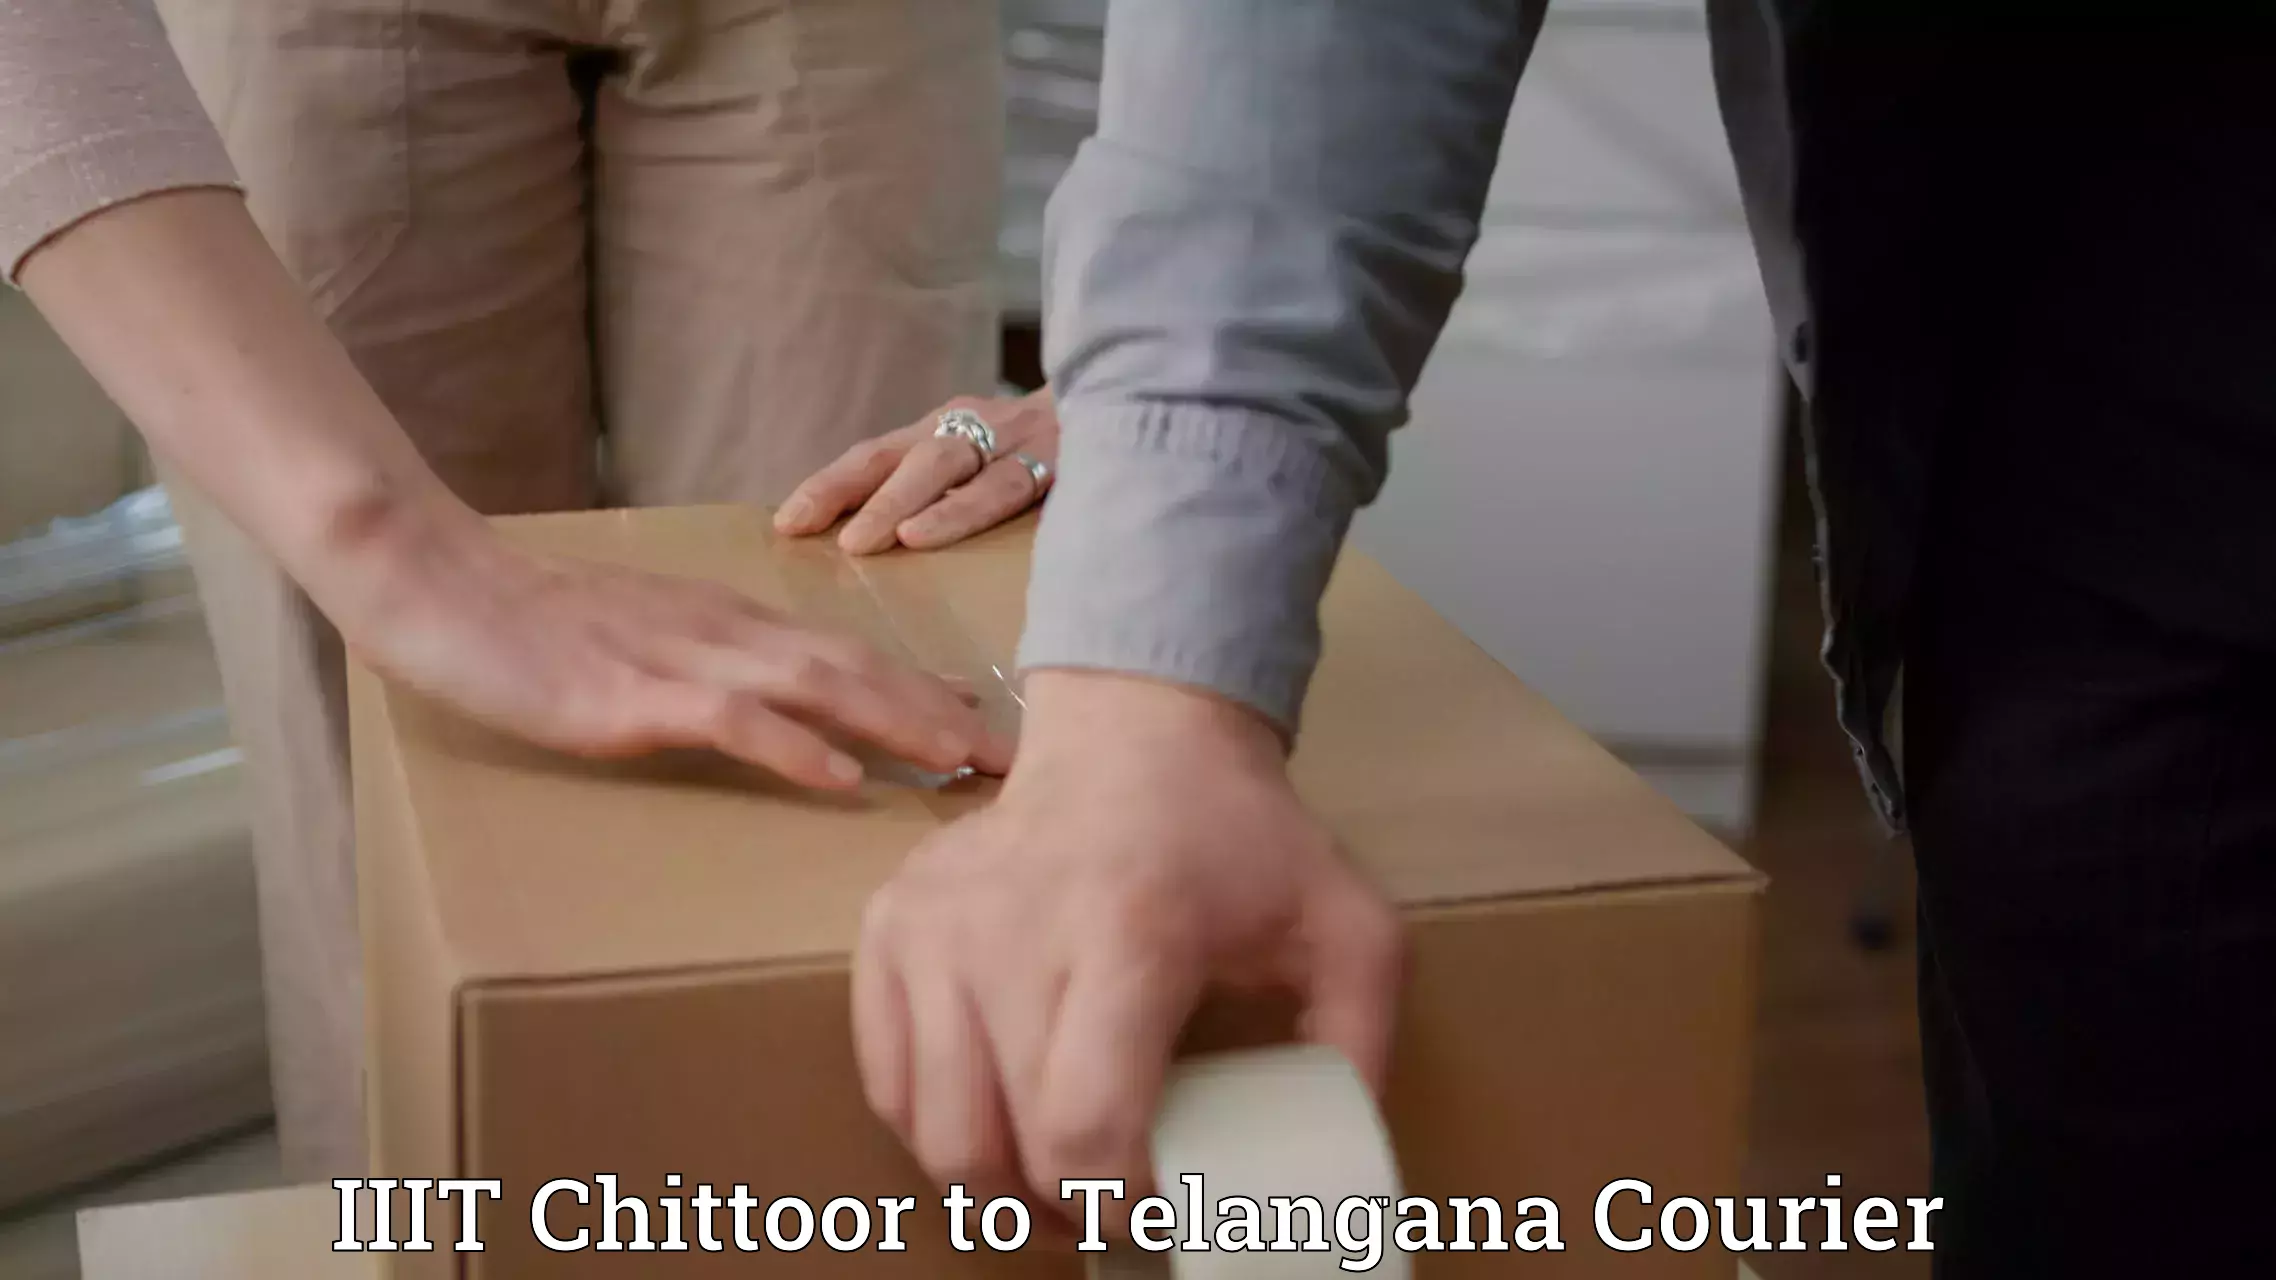 Cost-effective courier options IIIT Chittoor to Jainad